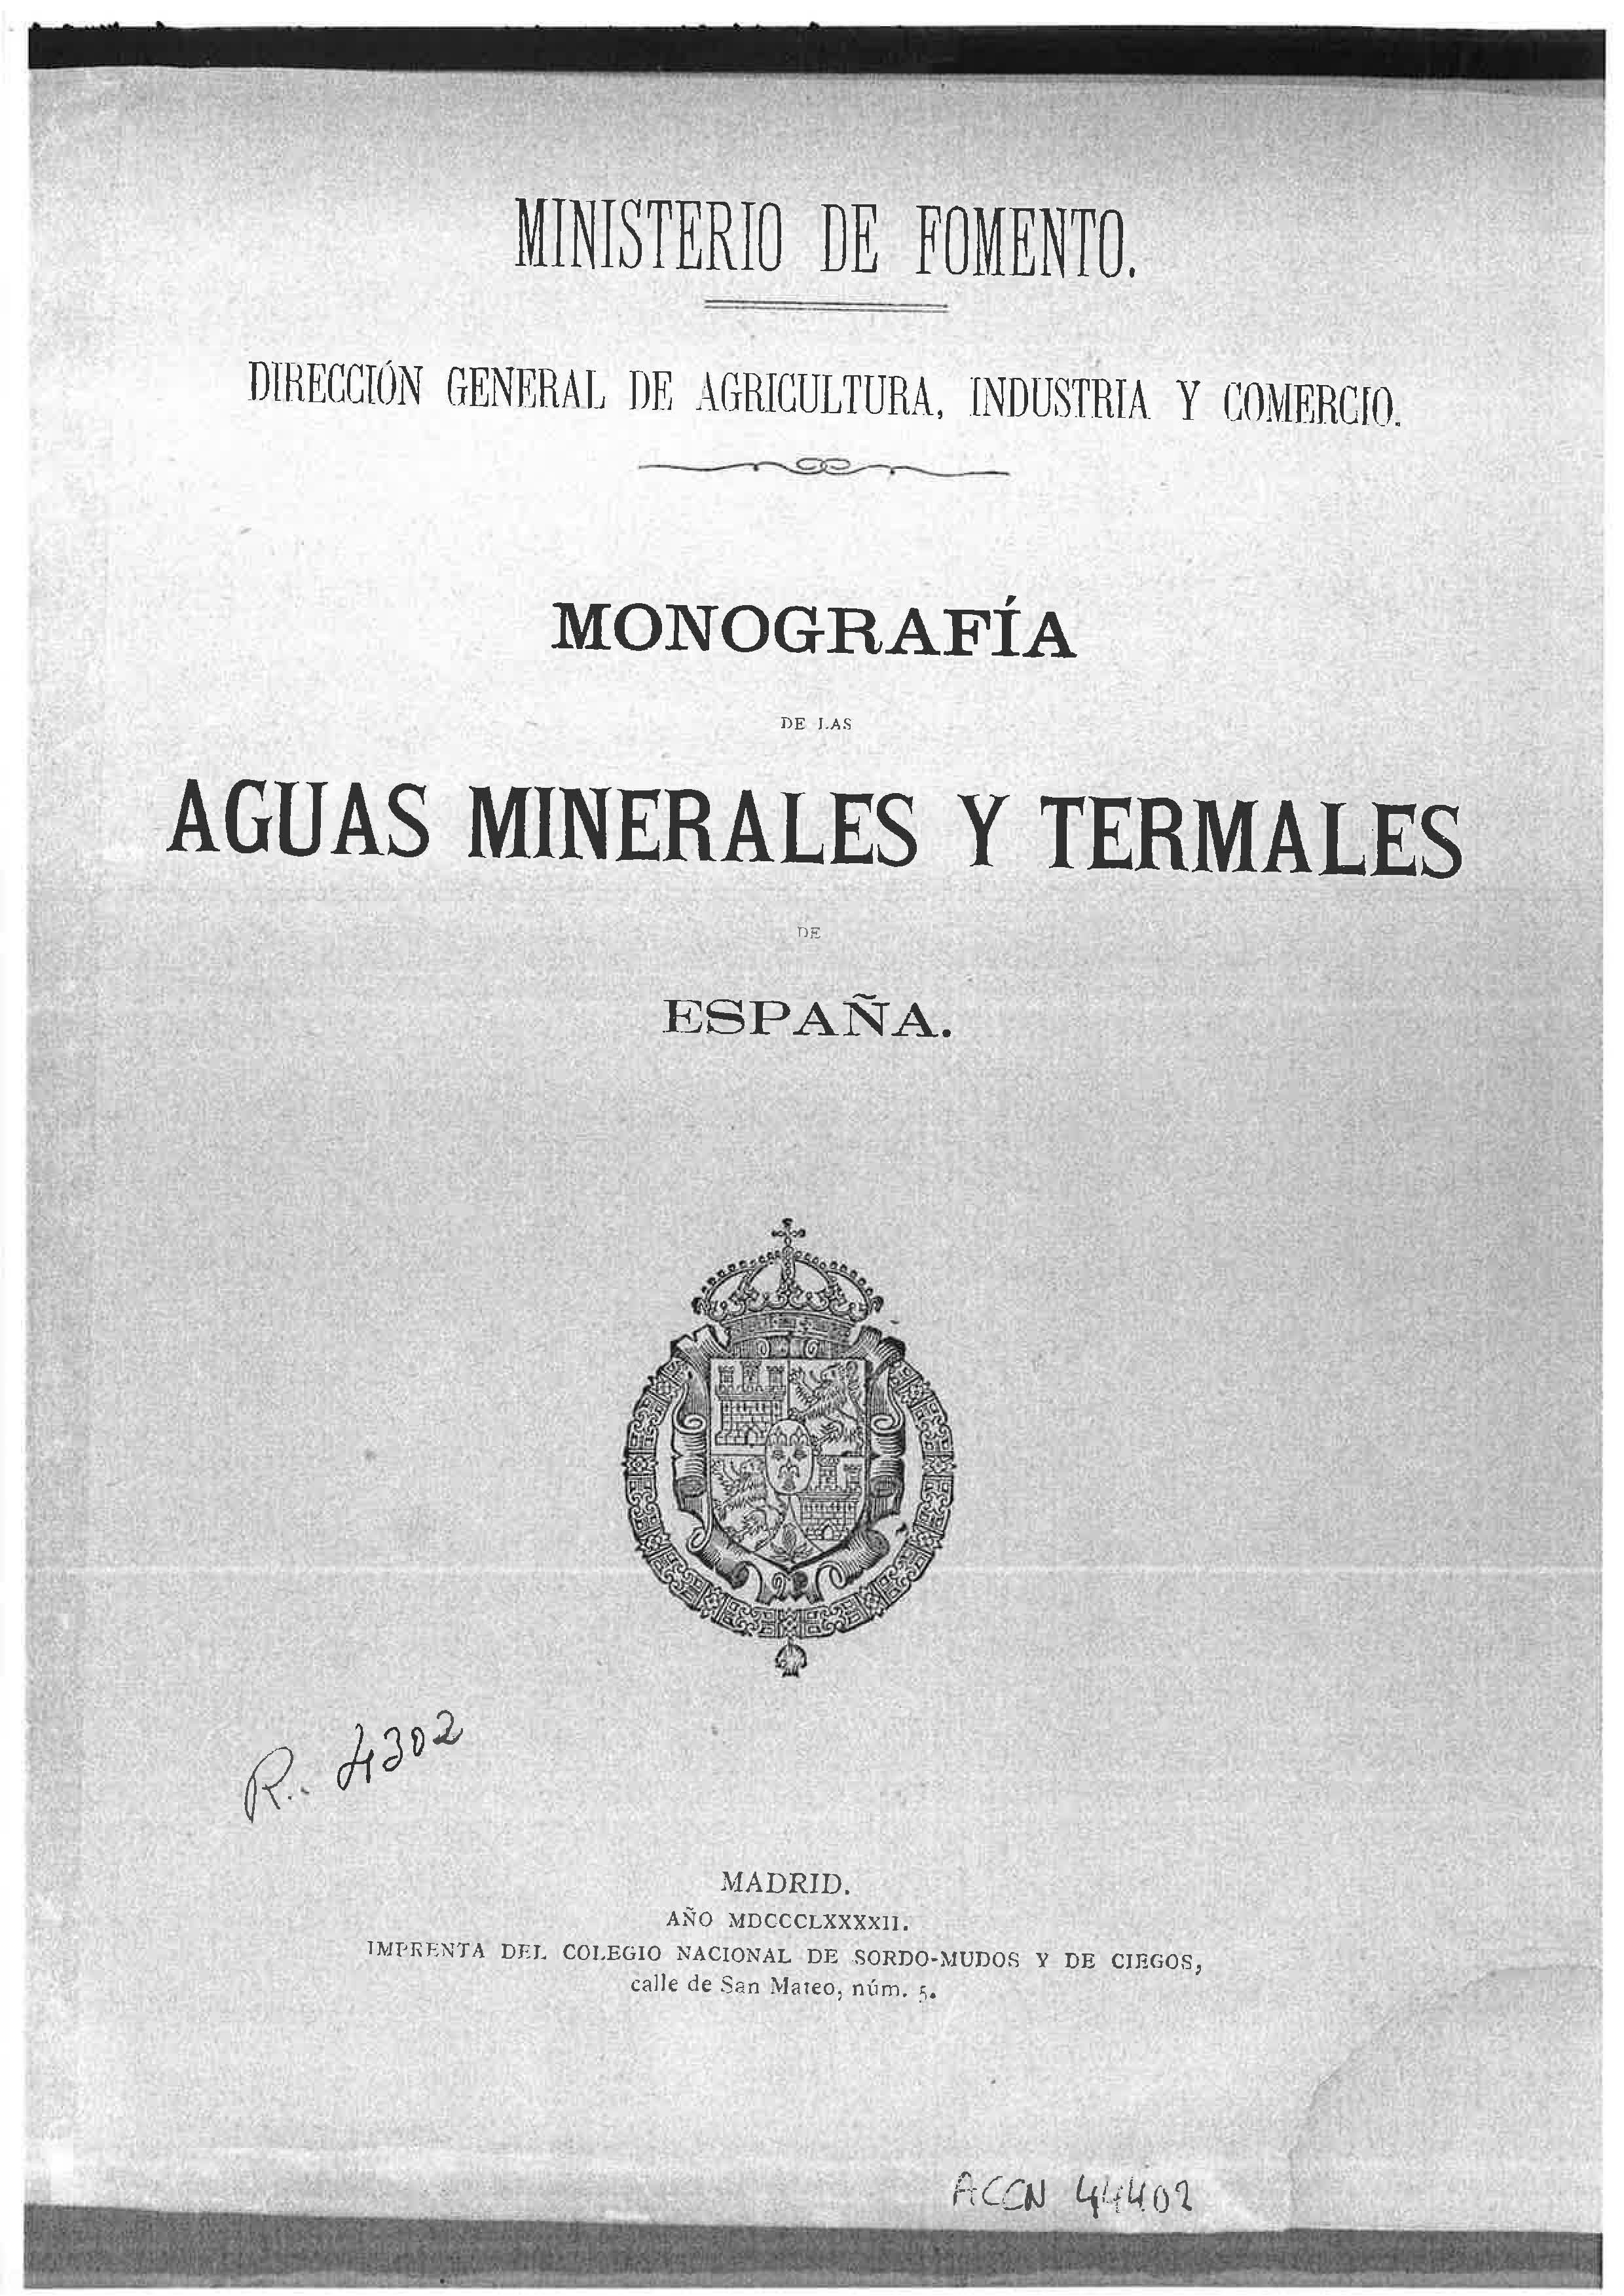 Portada del libro "Monografía de las aguas minerales y termales de España" (1892)